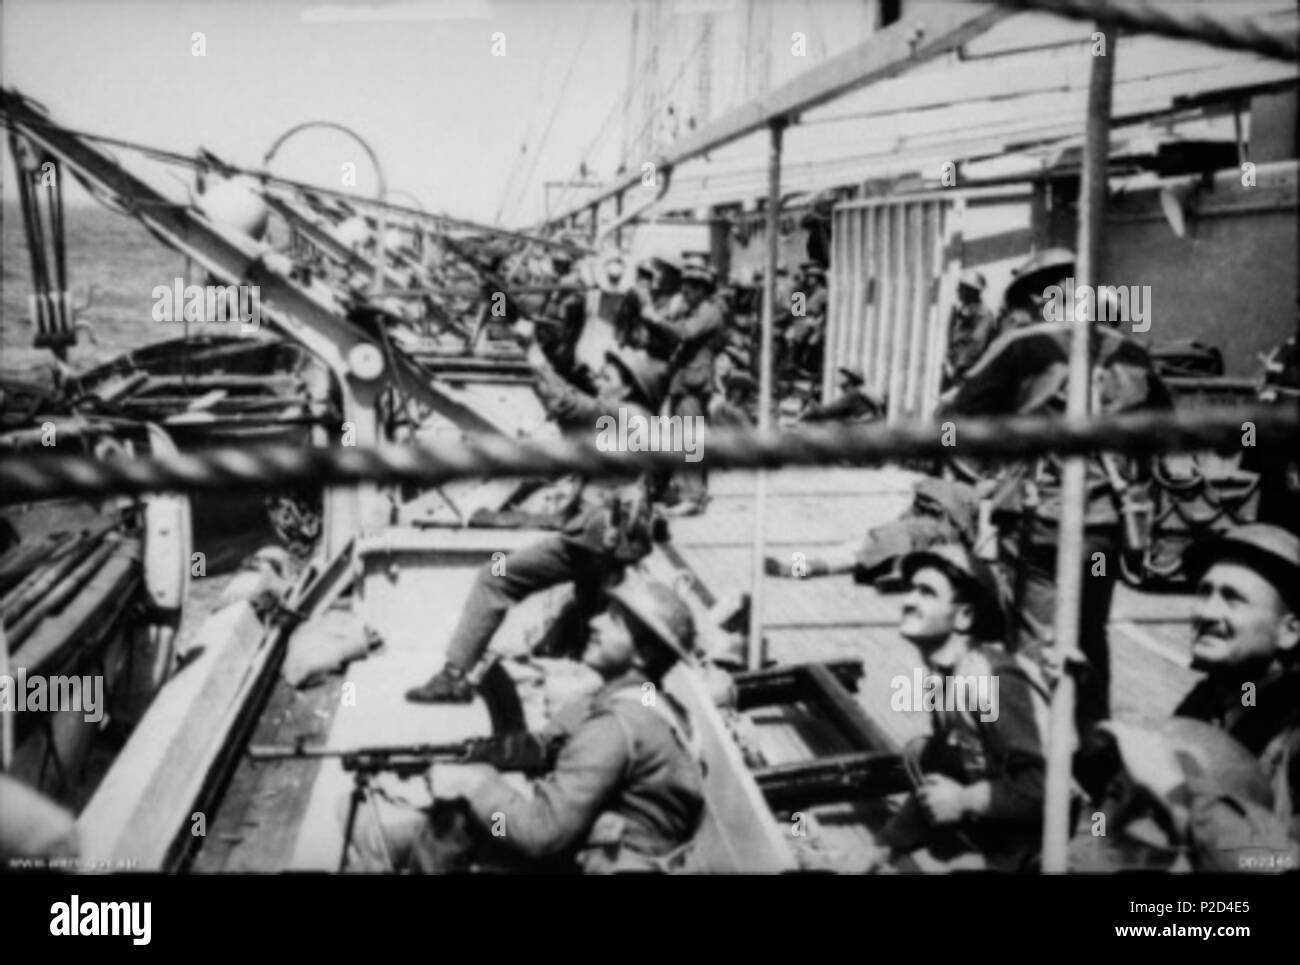 . Australian War Memorial (AWM) Katalog Nummer 069346. Australische Bren gunners verteidigen das Schiff Costa Rica gegen einen Angriff durch Deutsche oder Italienische Flugzeuge während der Evakuierung von Griechenland. Das Schiff wurde später gesunken, aber ohne Verlust des Lebens. April 1940. Unbekannt 8 Bren gunners Schiff Stockfoto